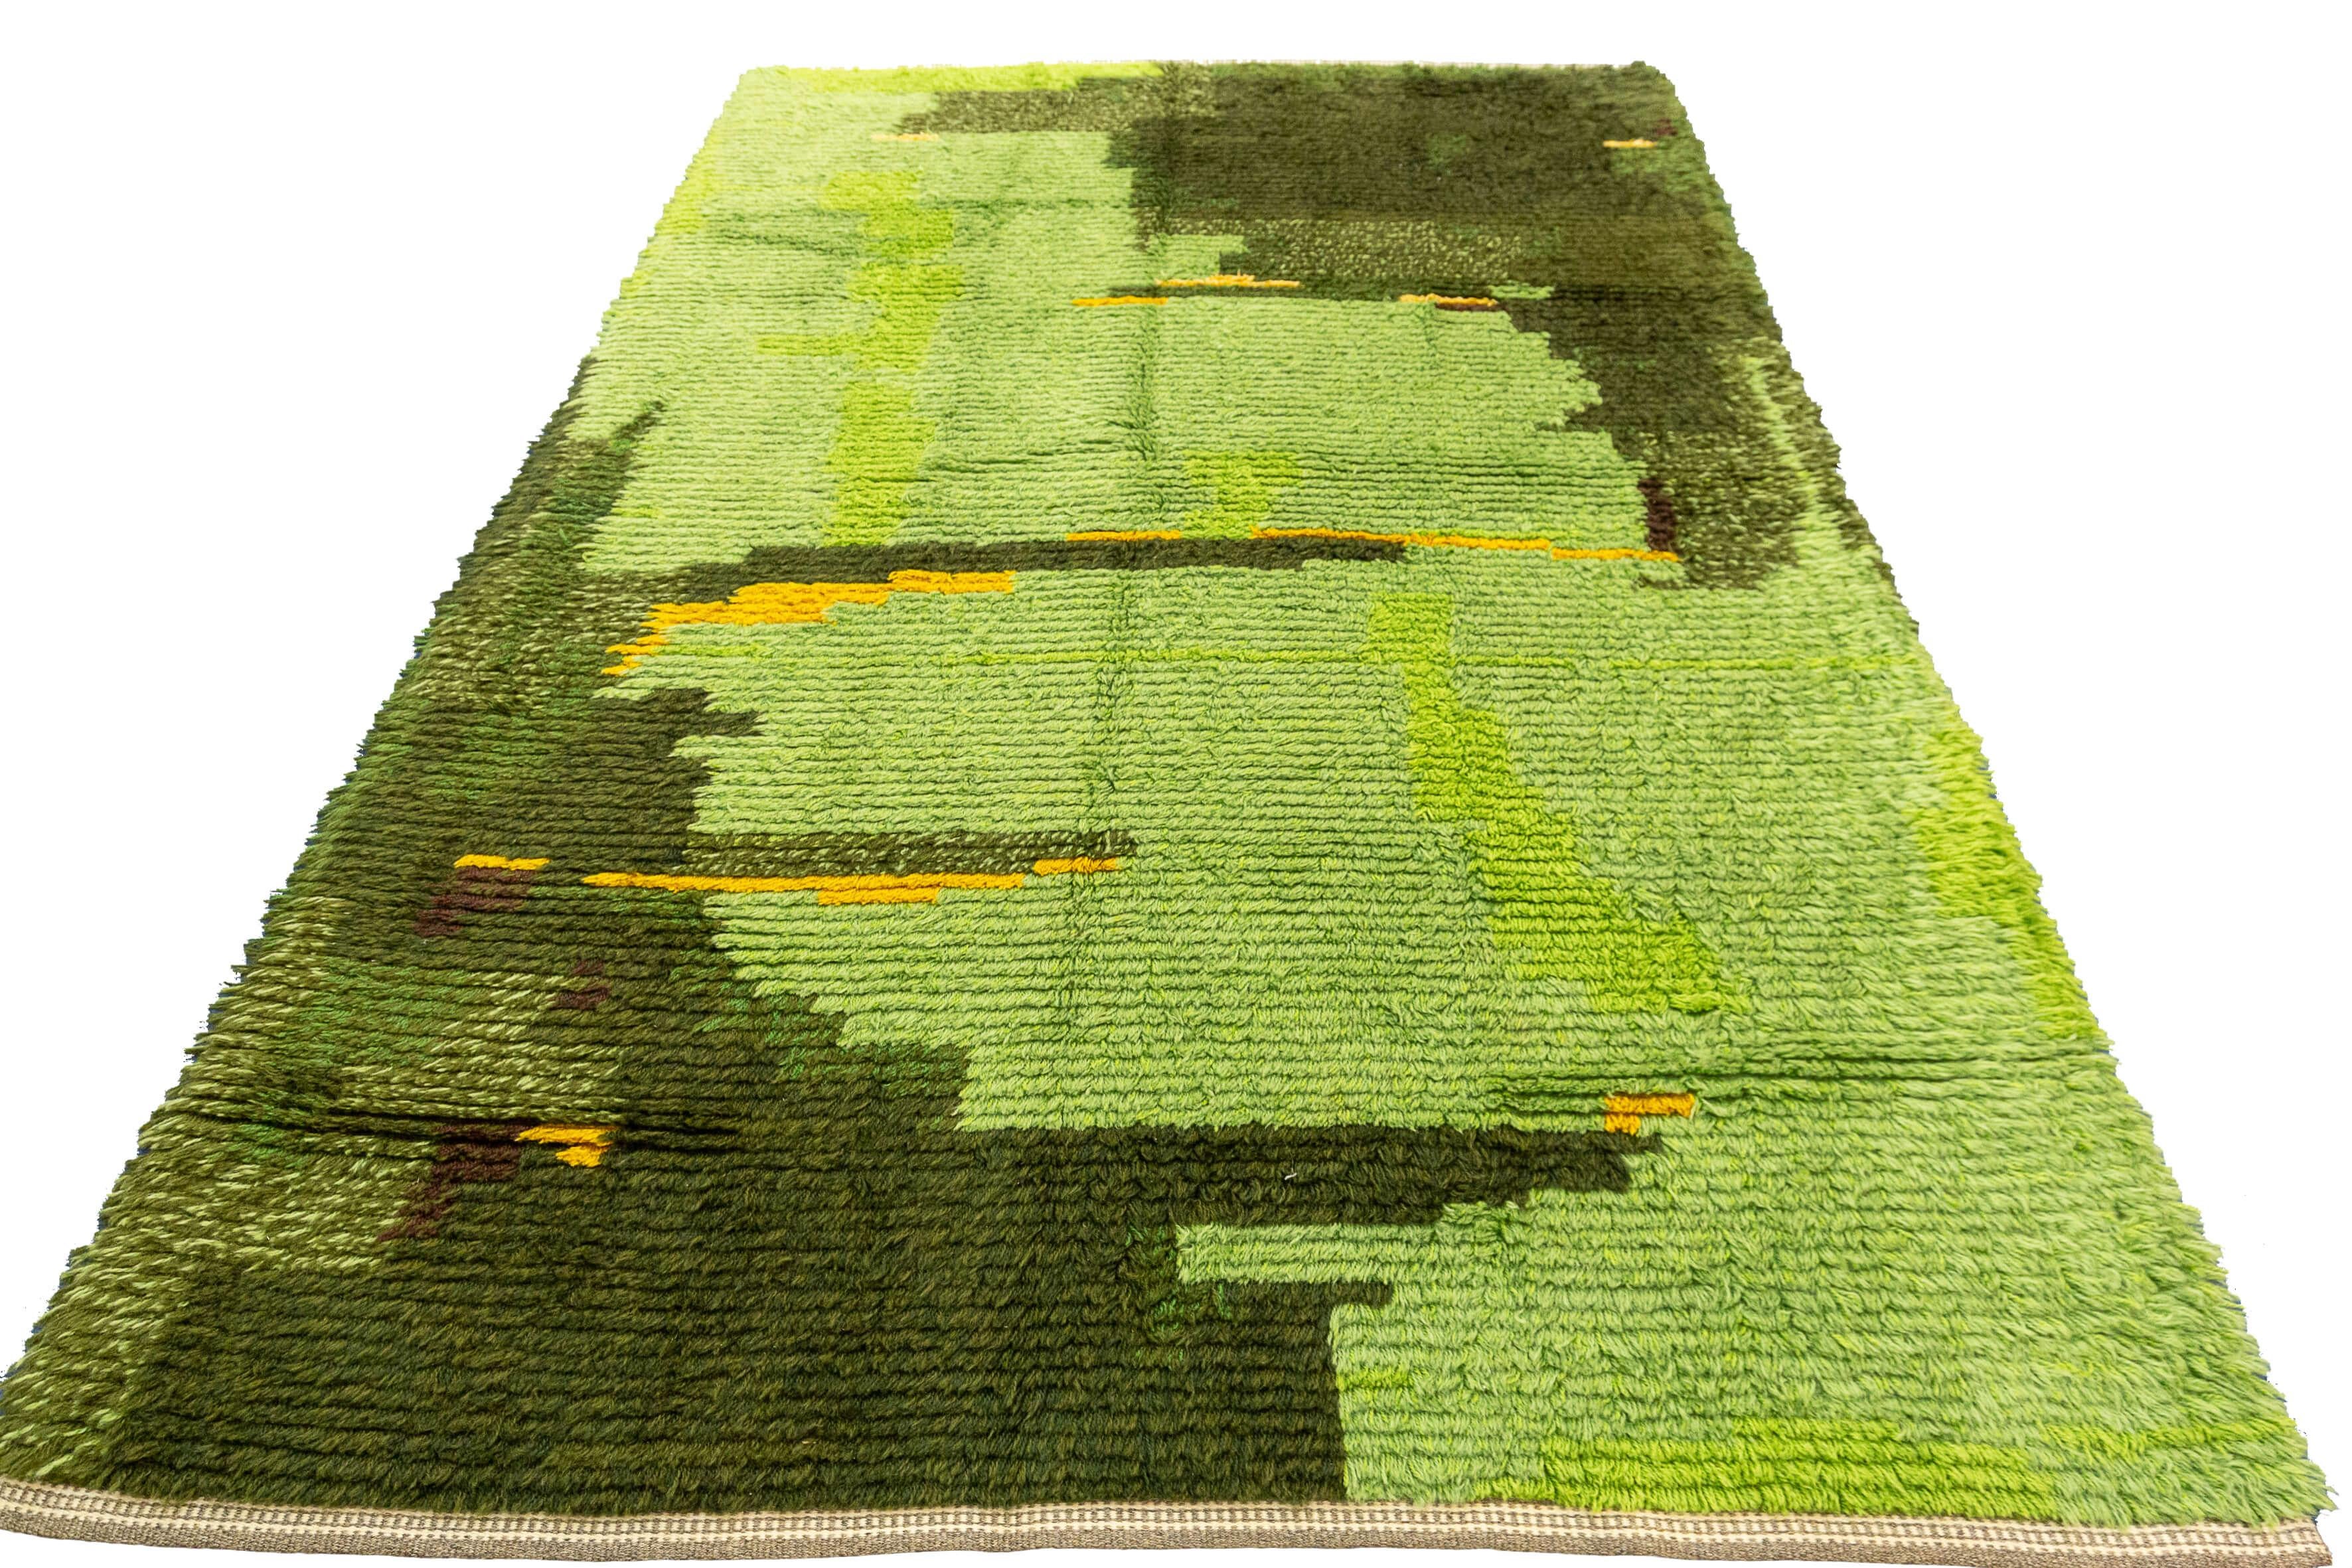 Ce tapis suédois Rya se pare d'une belle couleur verte qui respire la fraîcheur, la tranquillité et le lien avec la nature. La teinte verte luxuriante ajoute une touche vibrante et rajeunissante à tout espace qu'elle orne, lui insufflant un